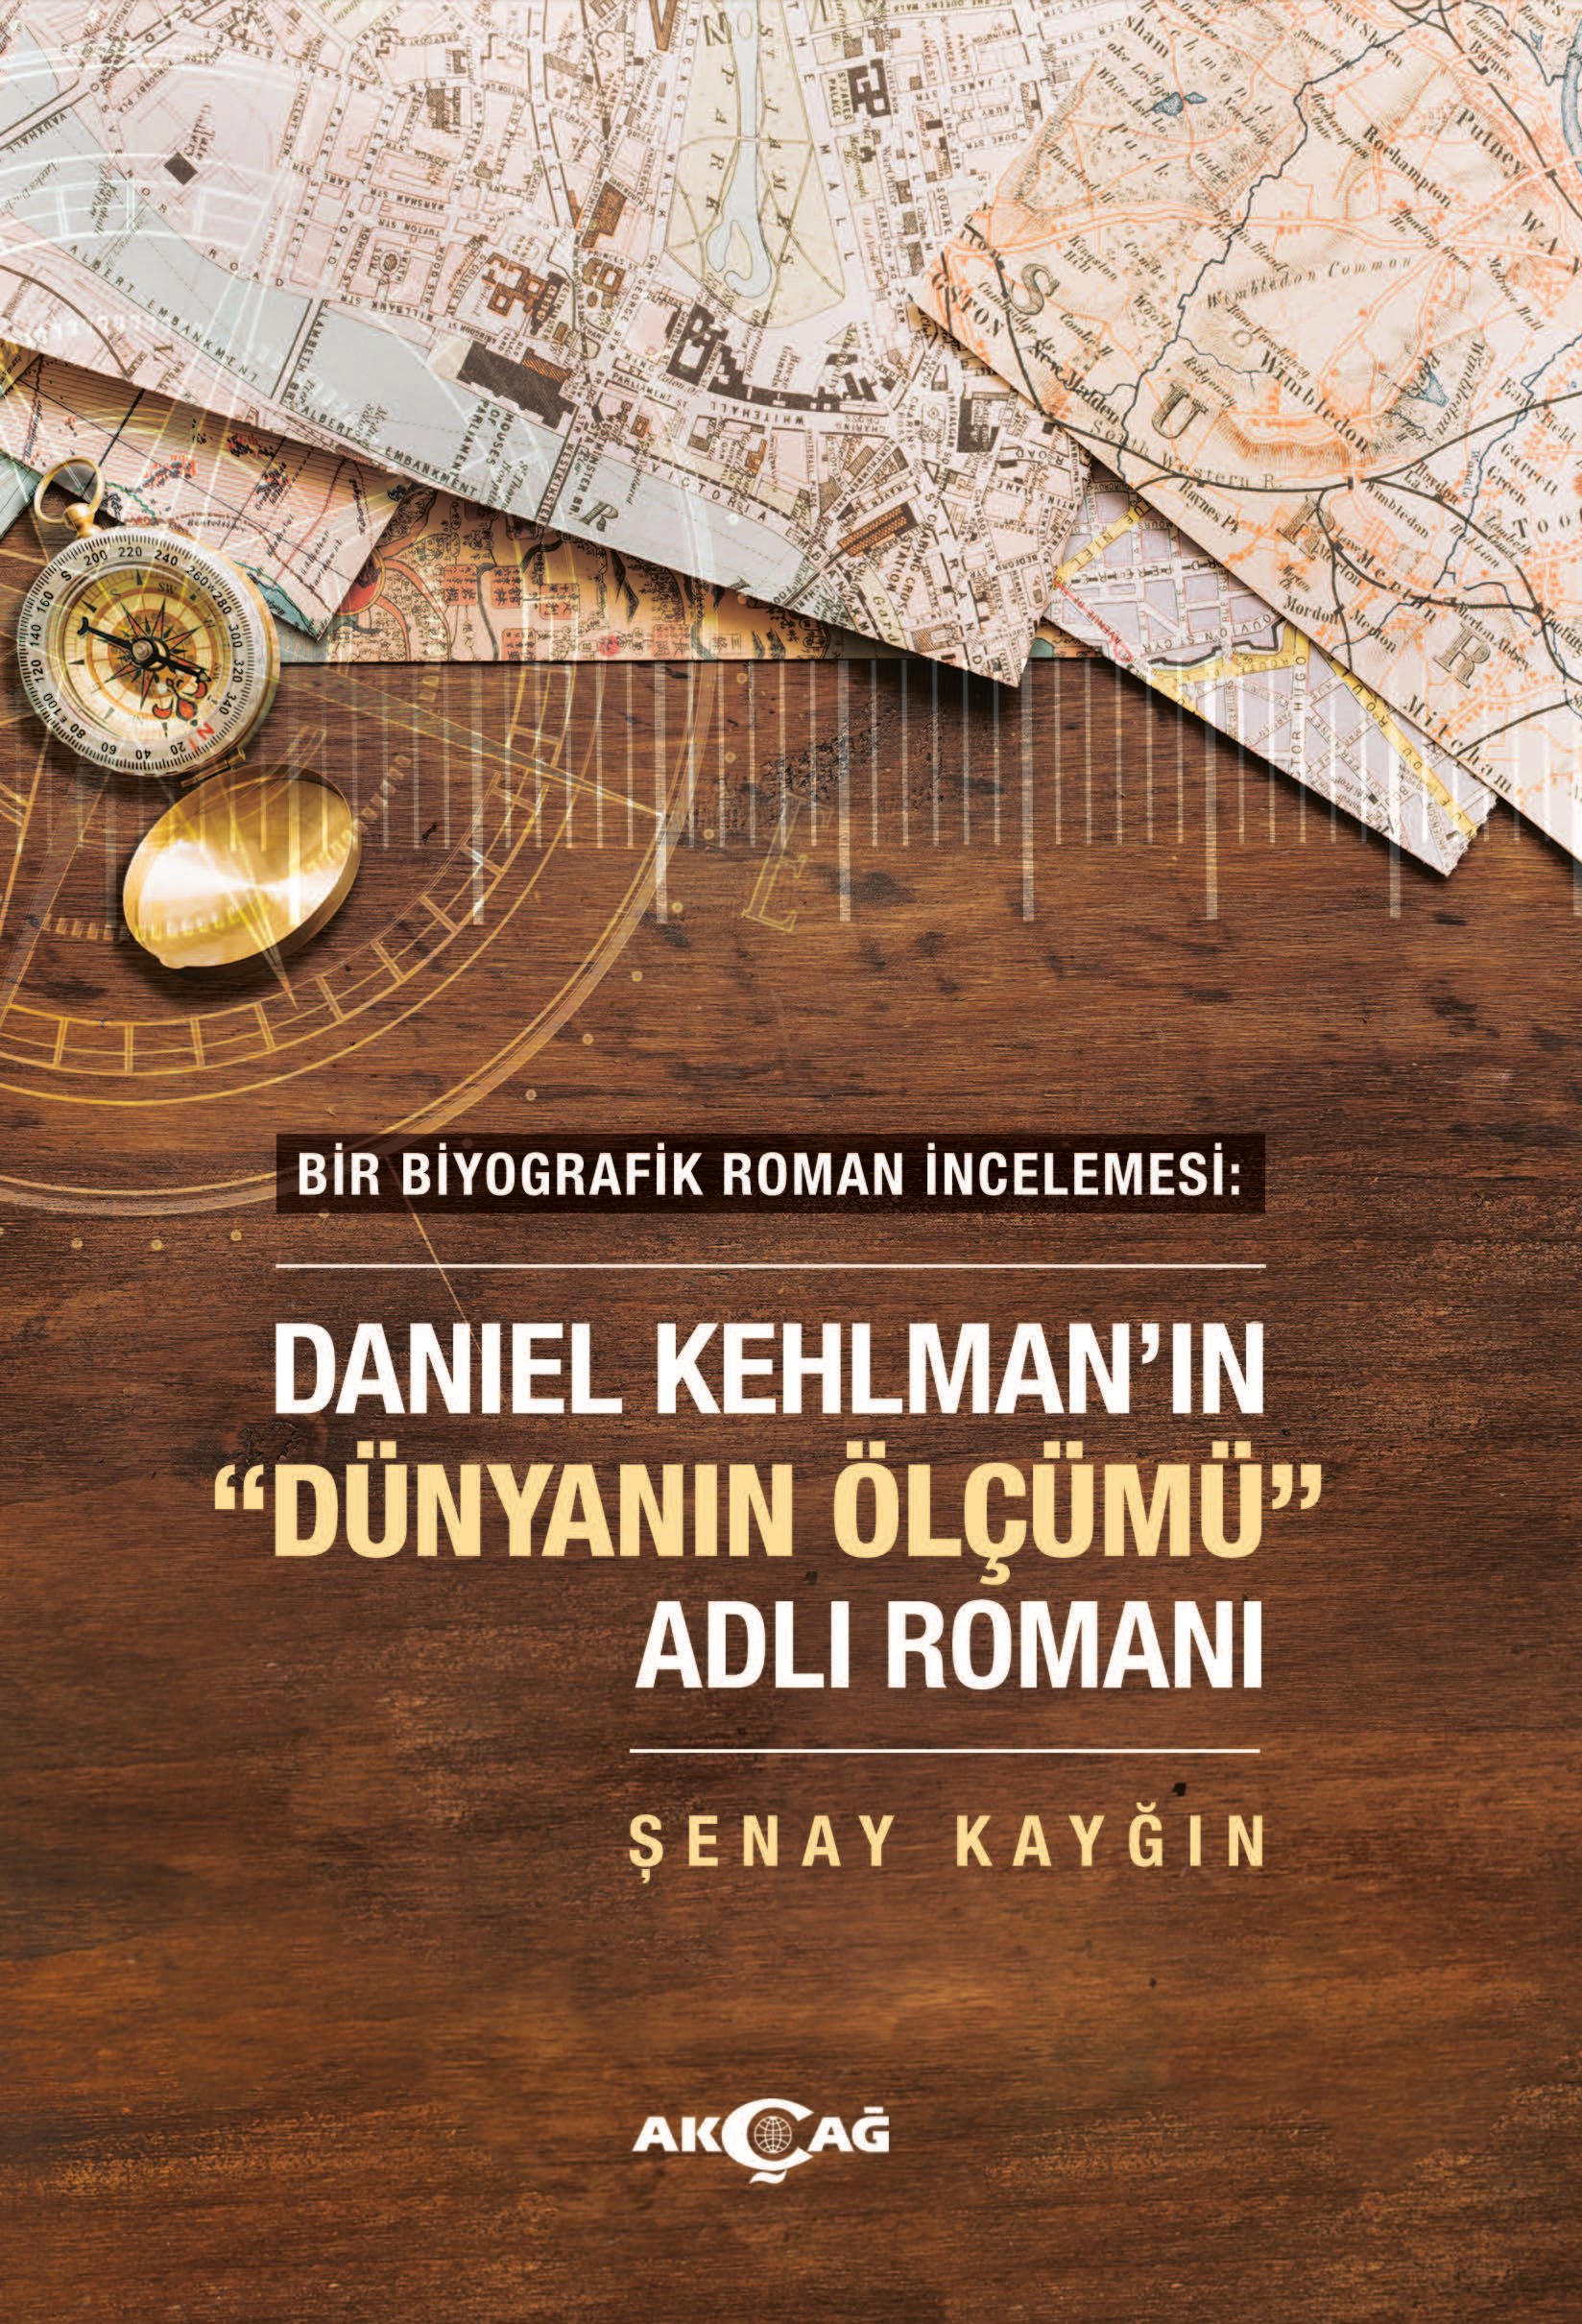 DANIEL KEHLMANN'IN DÜNYANIN ÖLÇÜMÜ ADLI ROMANI